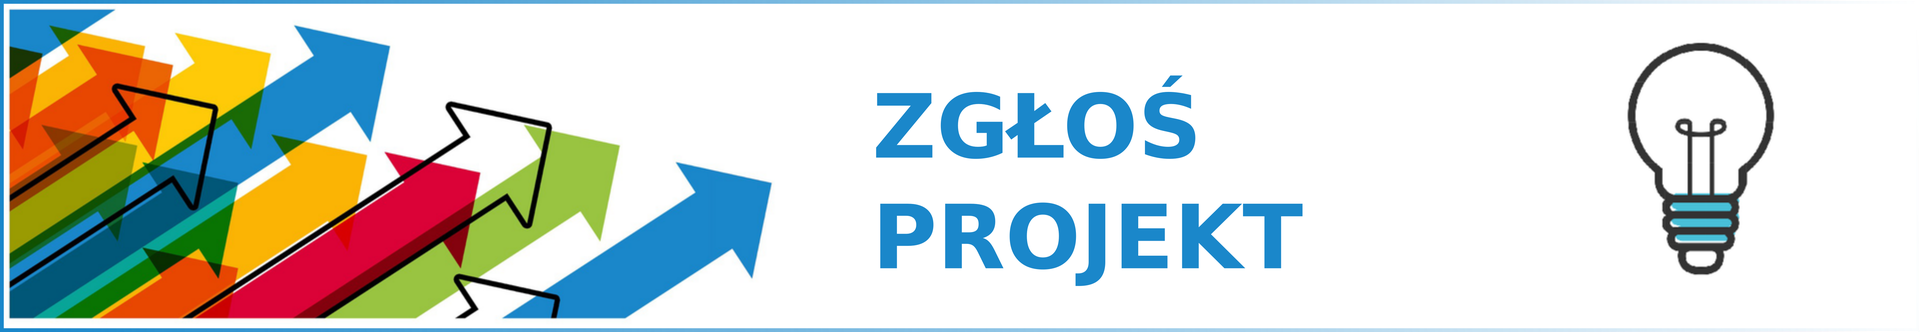 zglos_projekt.png